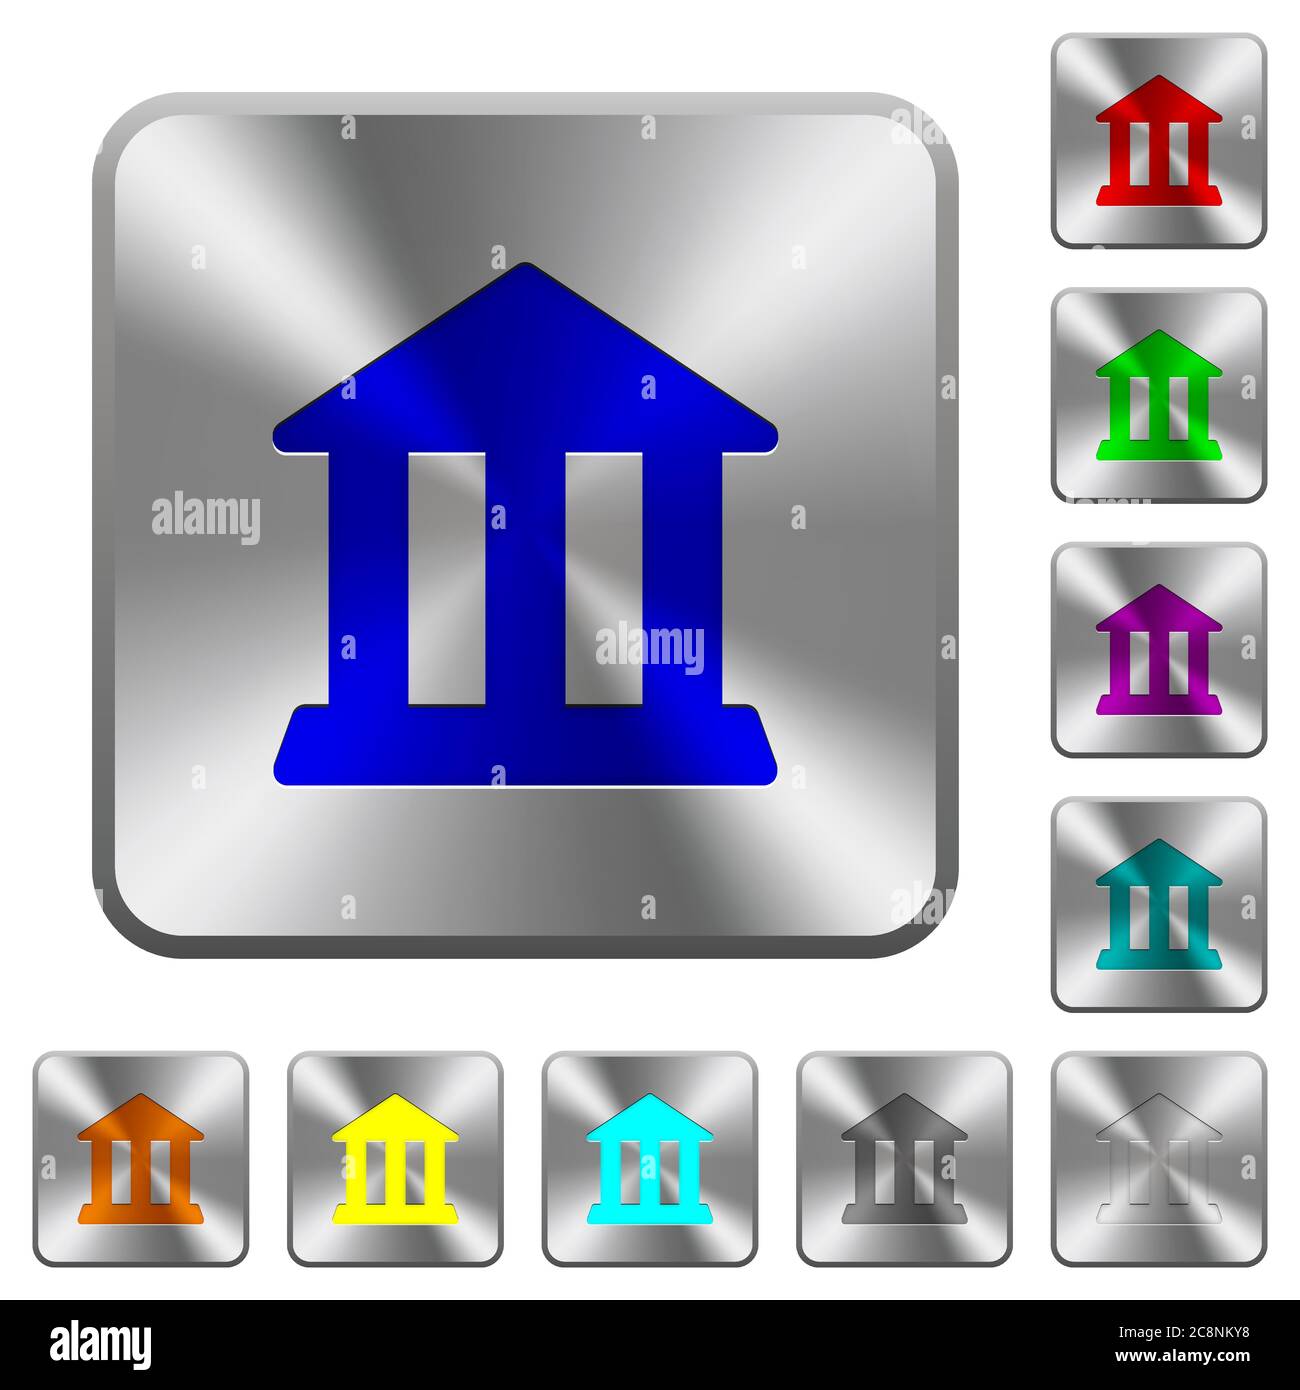 Icone di banca incise su bottoni arrotondati in acciaio quadrato Illustrazione Vettoriale